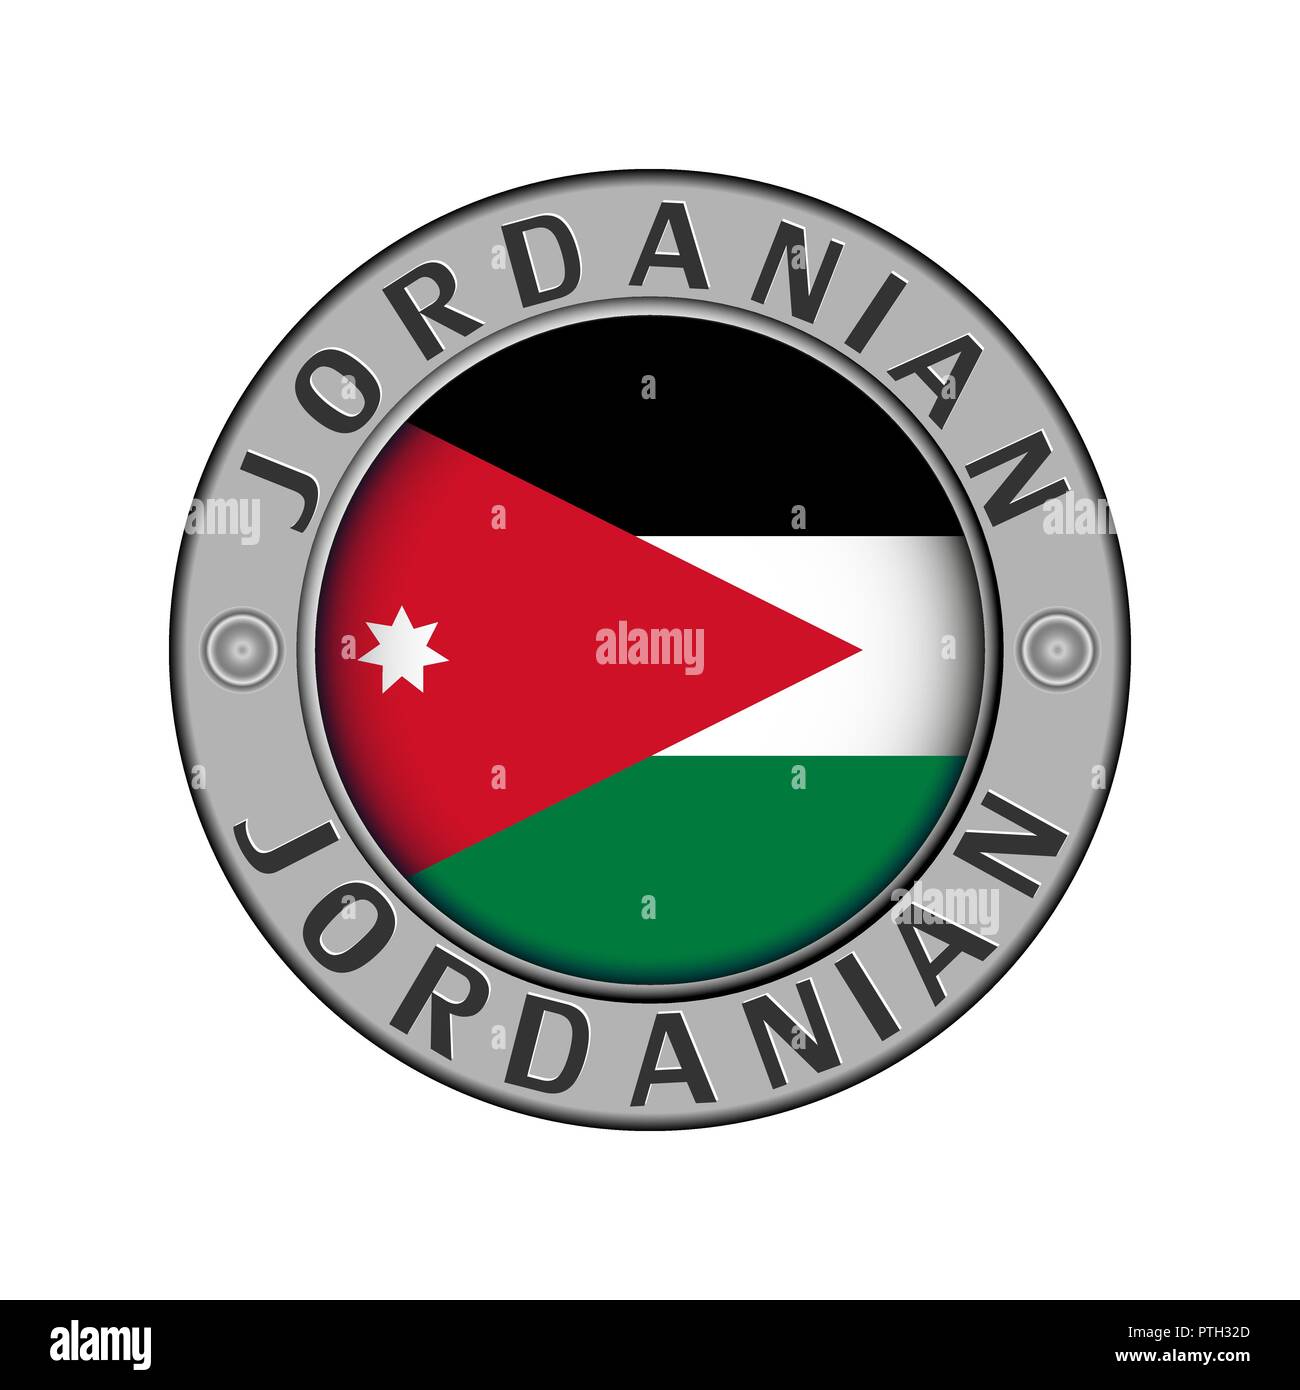 Rotondo di metallo medaglione con il nome del paese di Giordania e un indicatore rotondo nel centro Illustrazione Vettoriale